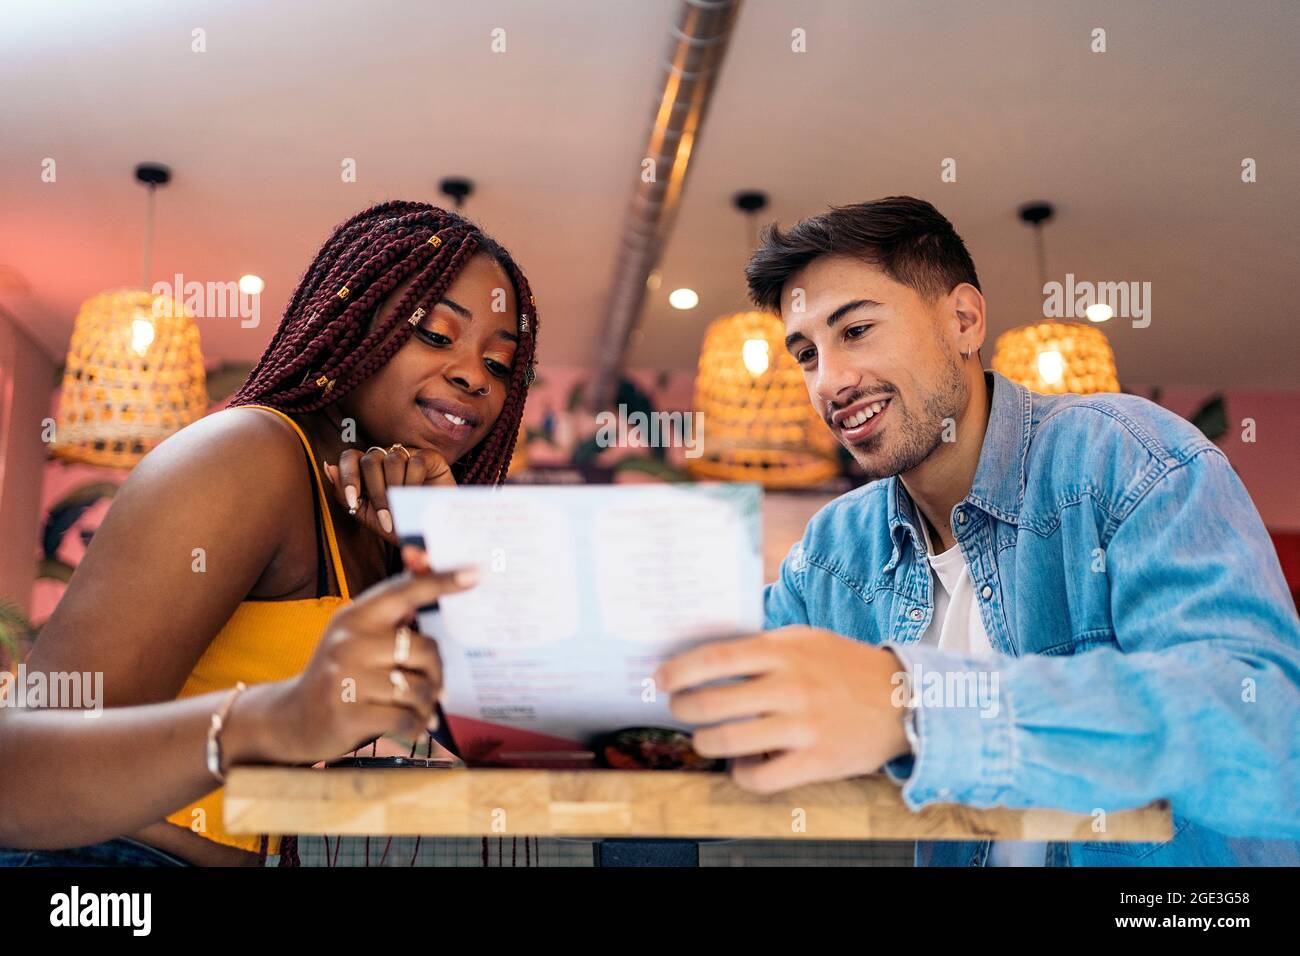 Multikulturelle Freunde sitzen in einem Restaurant und lesen gemeinsam das Menü. Stockfoto